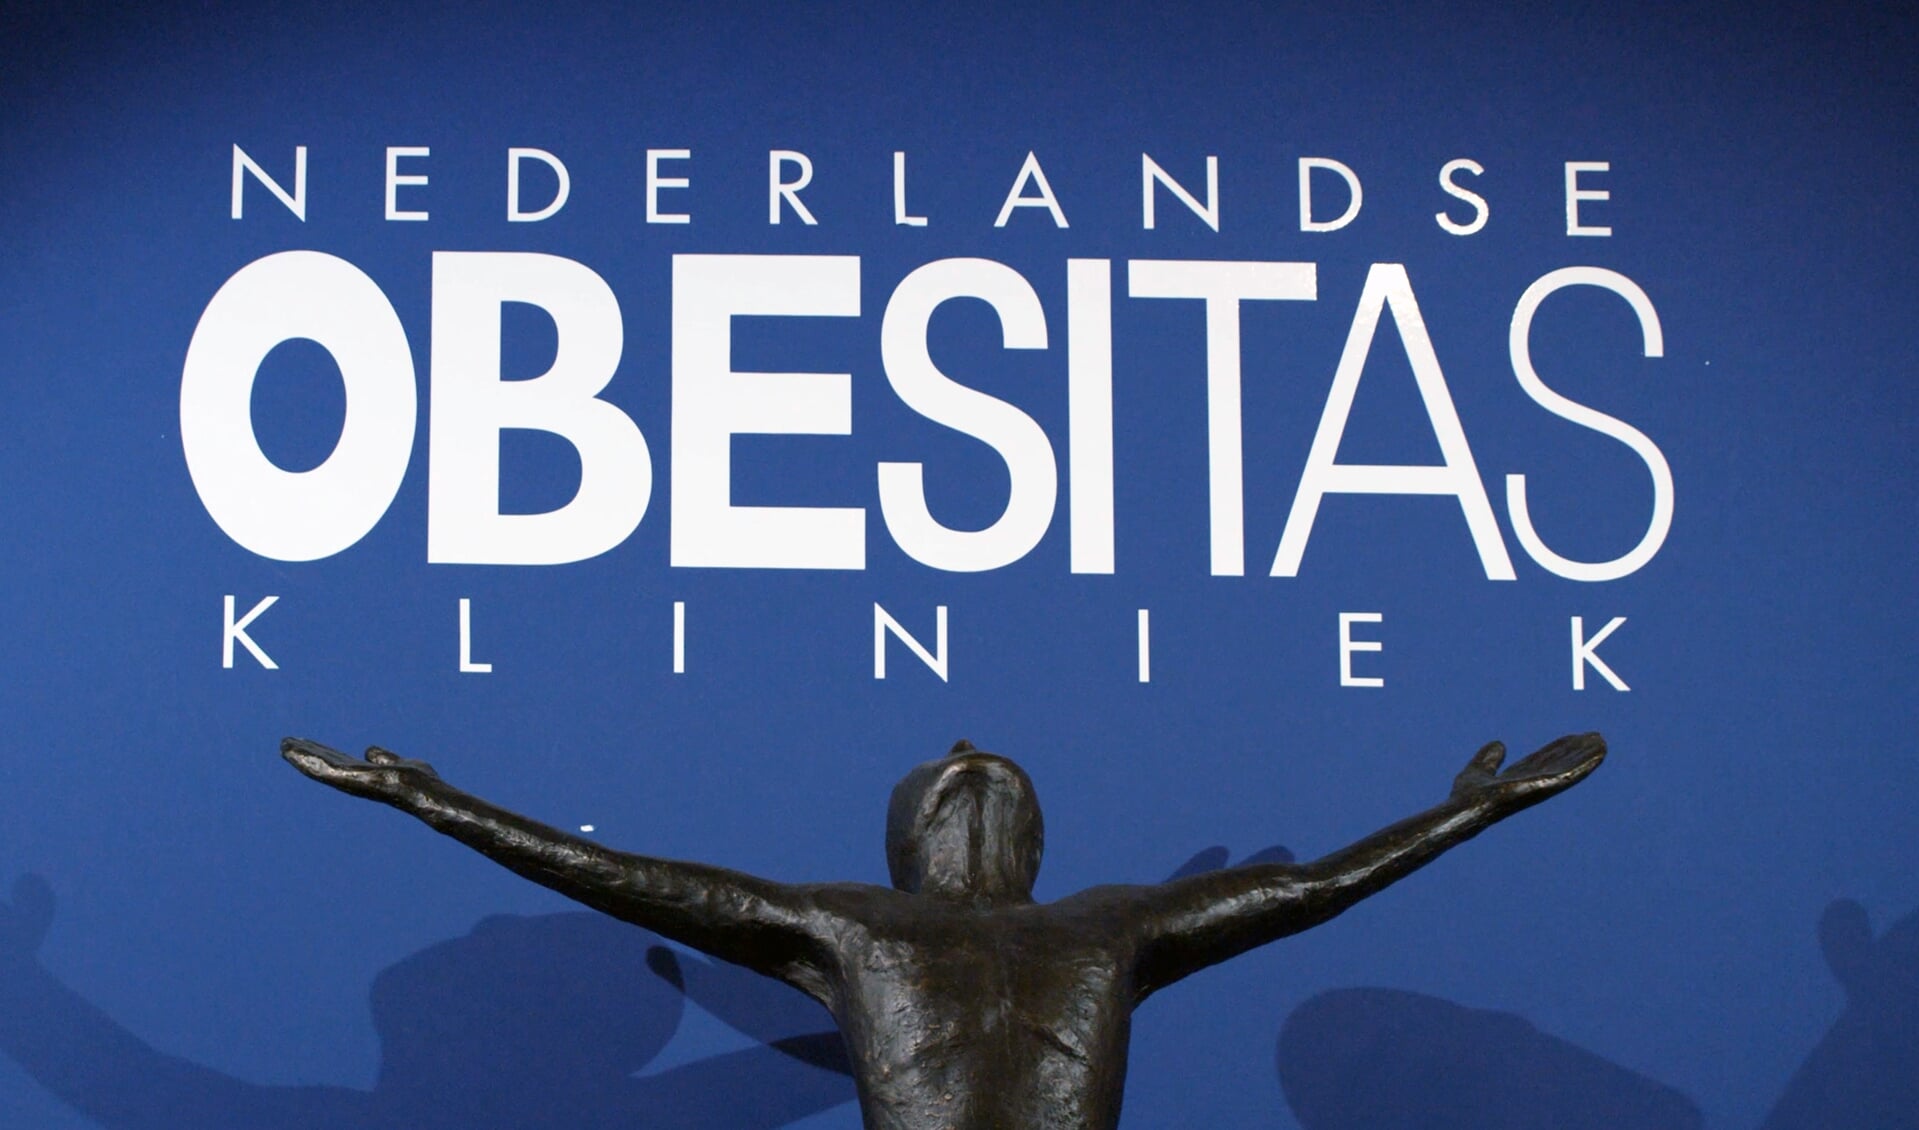 De Nederlandse Obesitas Kliniek helpt mensen met een BMI vanaf 35.